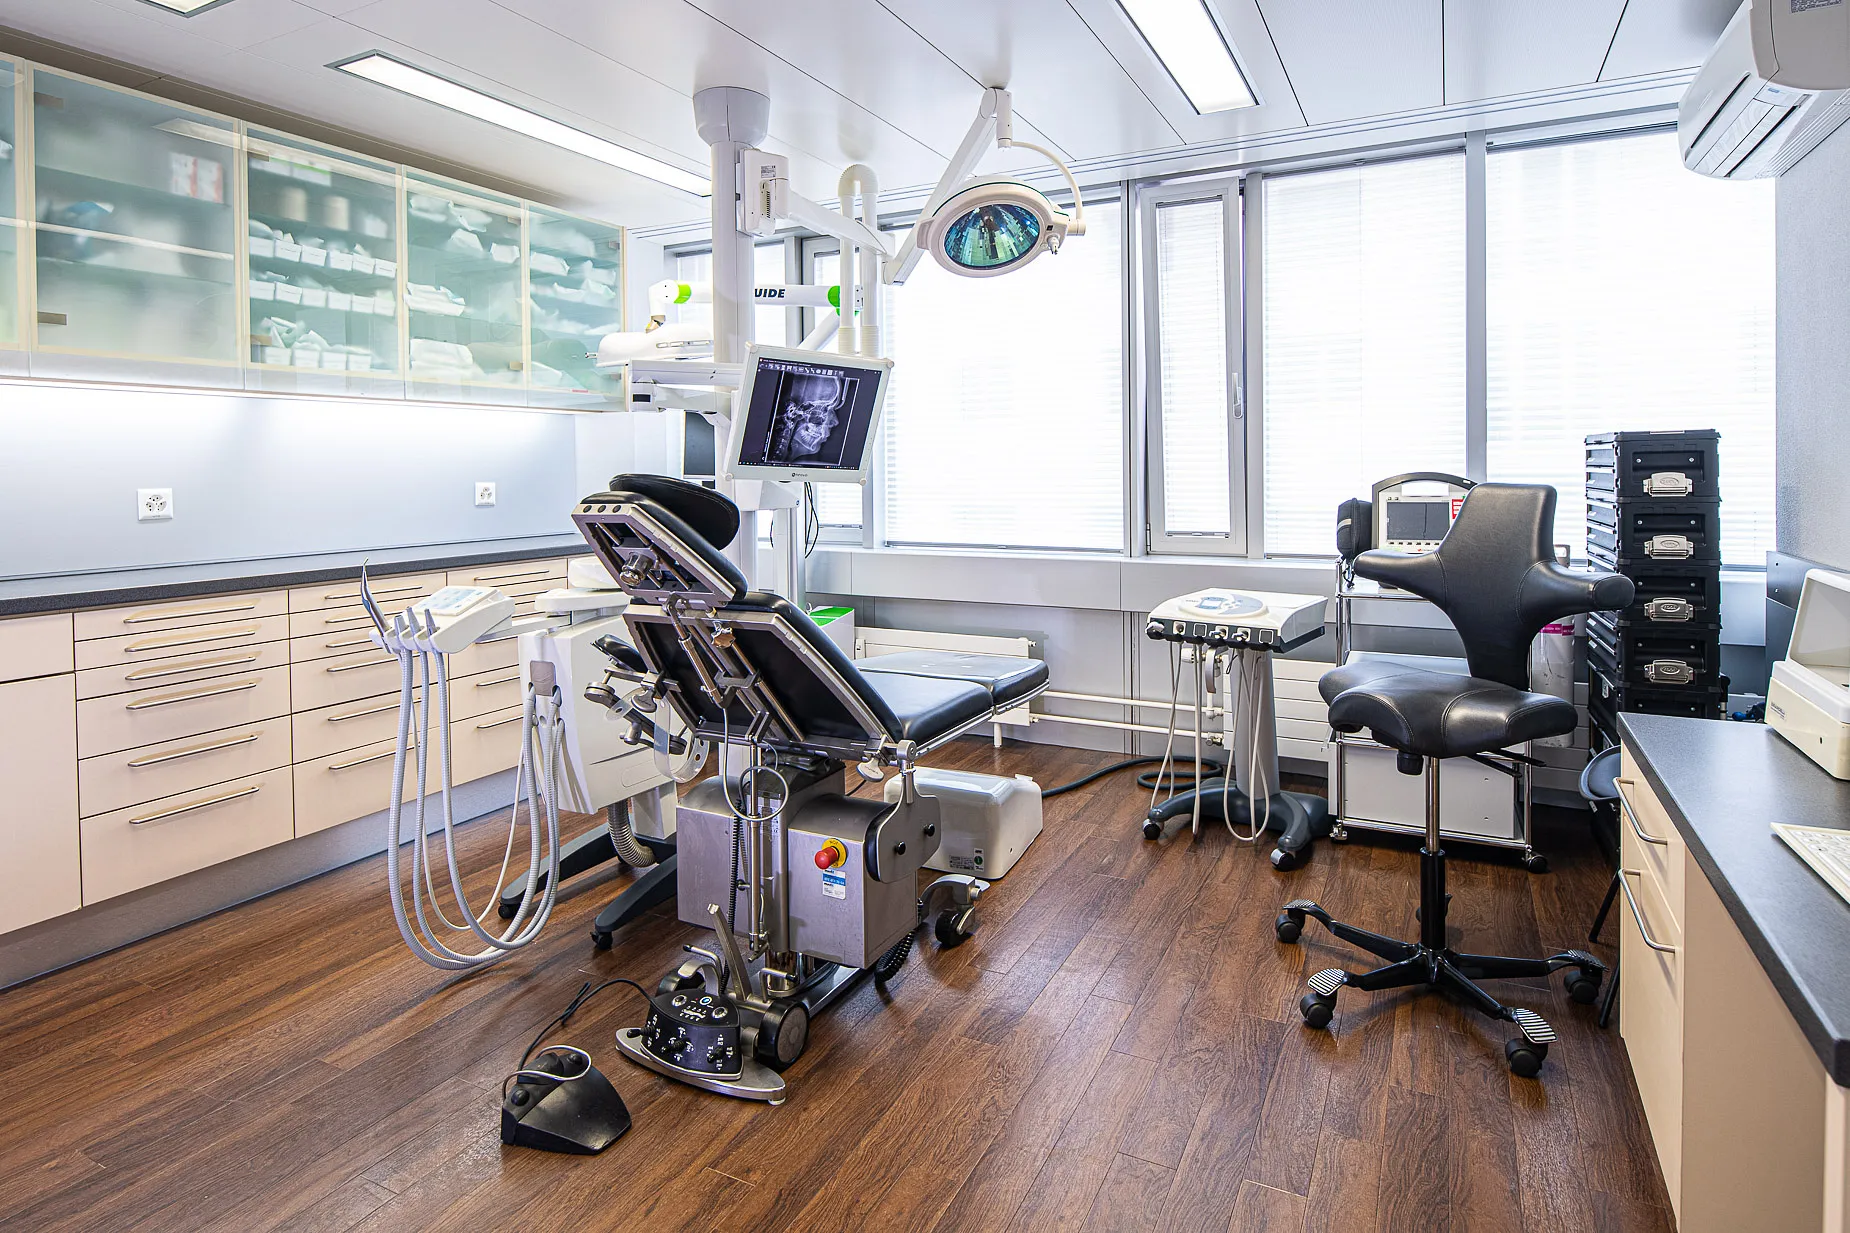 Zahnarzt Team Luzern | Dr. Markus Schulte